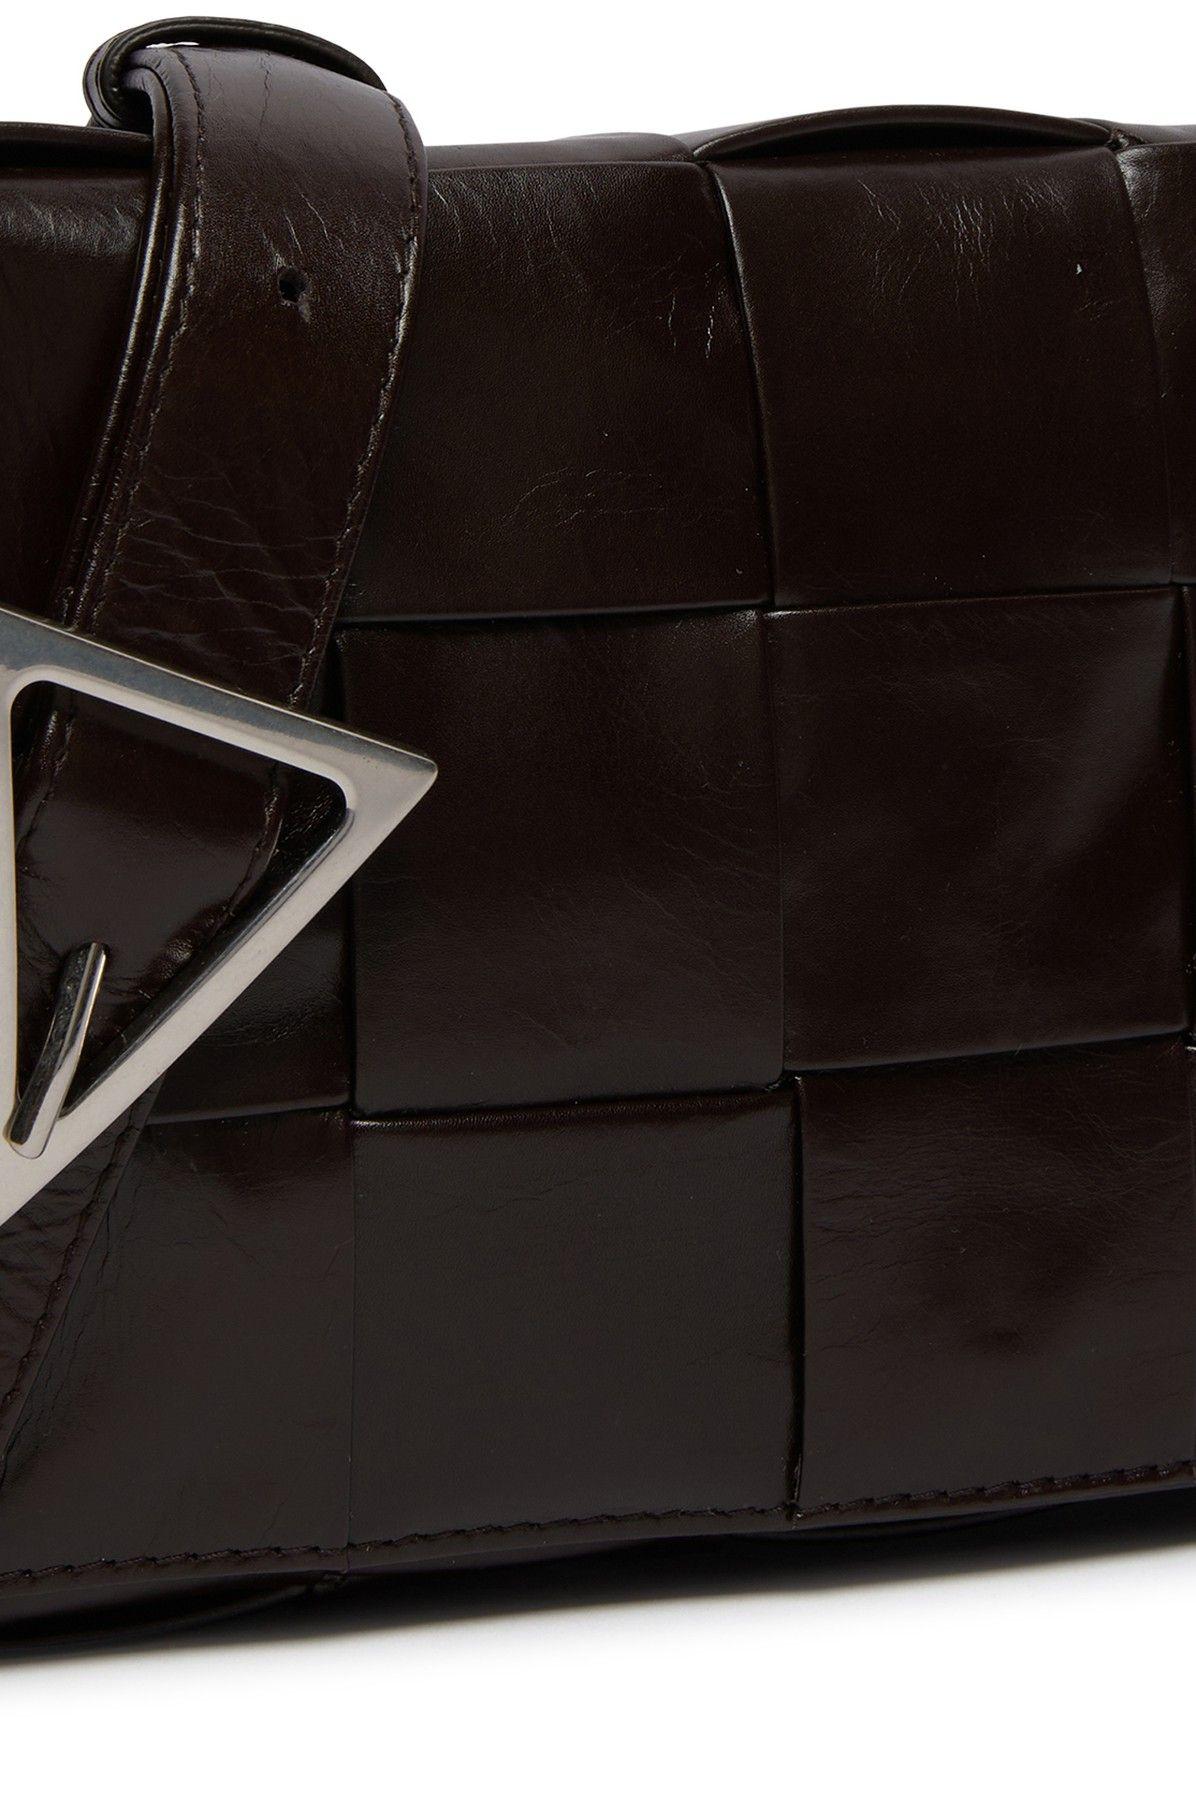 Bottega Veneta® Cassette Sling Bag in Black. Shop online now.